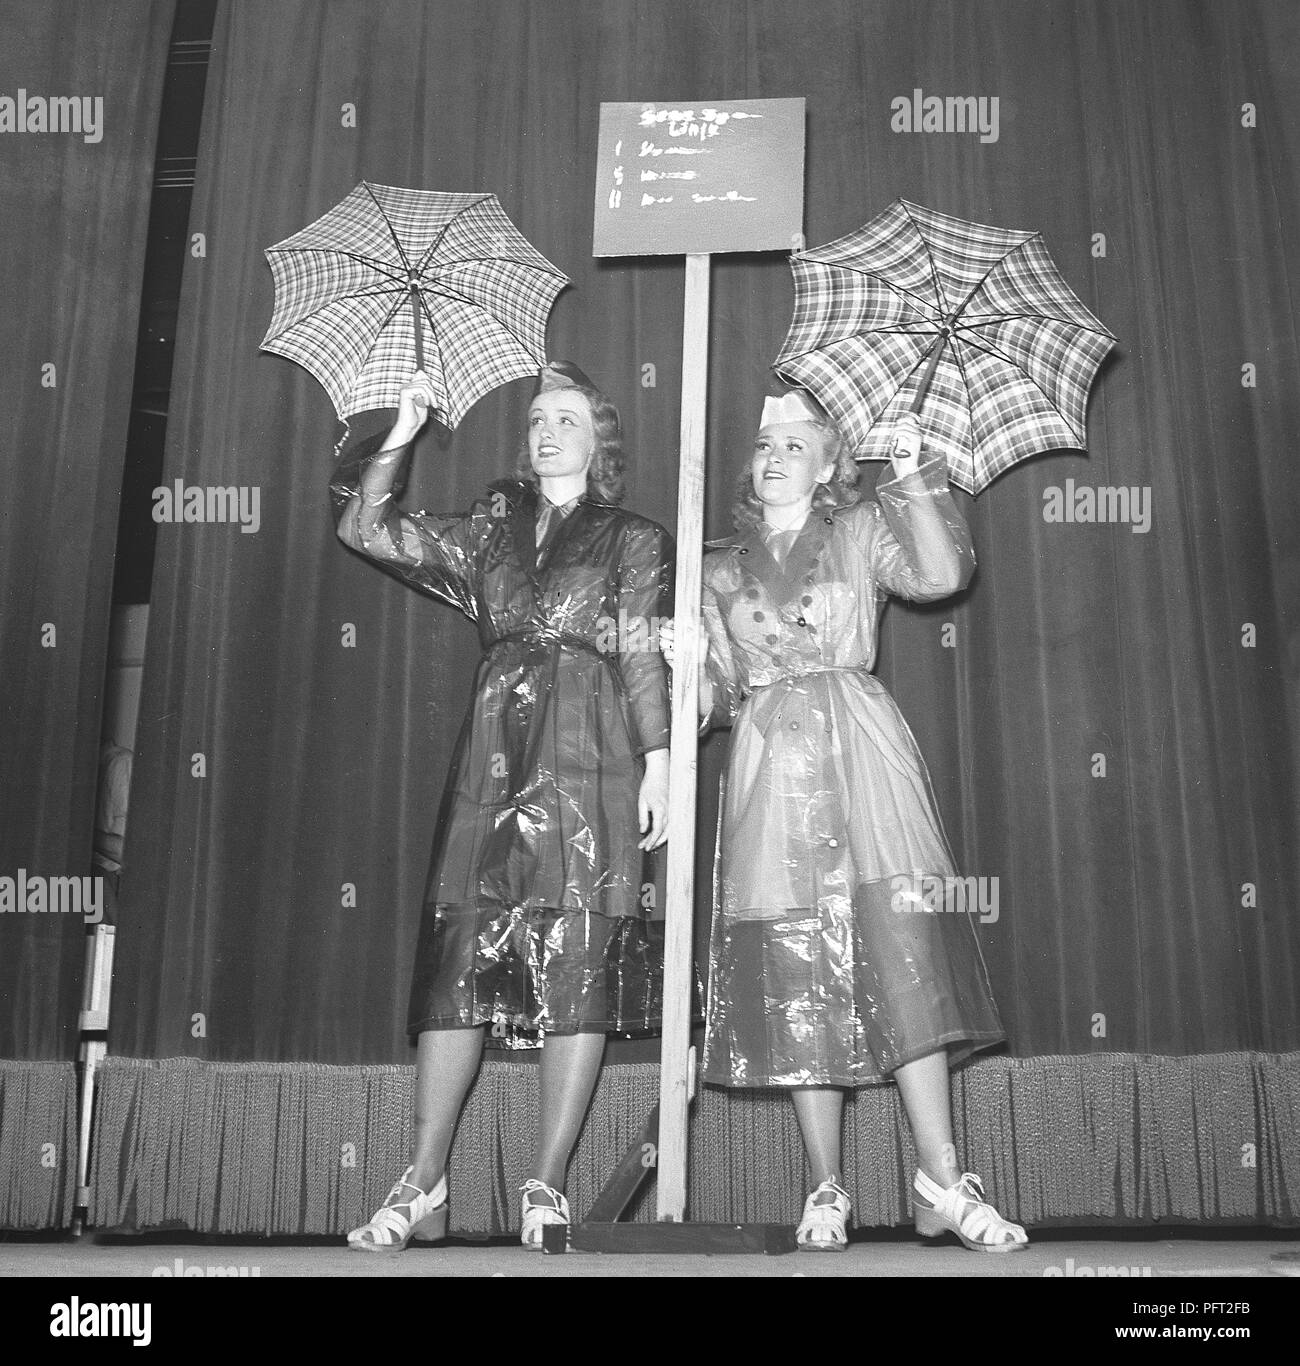 Frauen aus den 1940er Jahren in Regenmänteln. Zwei junge Frau in Regenmänteln aus Kunststoff zeigt ihnen Regenschirme. Schweden 1943 Ref. E47-5 Stockfoto